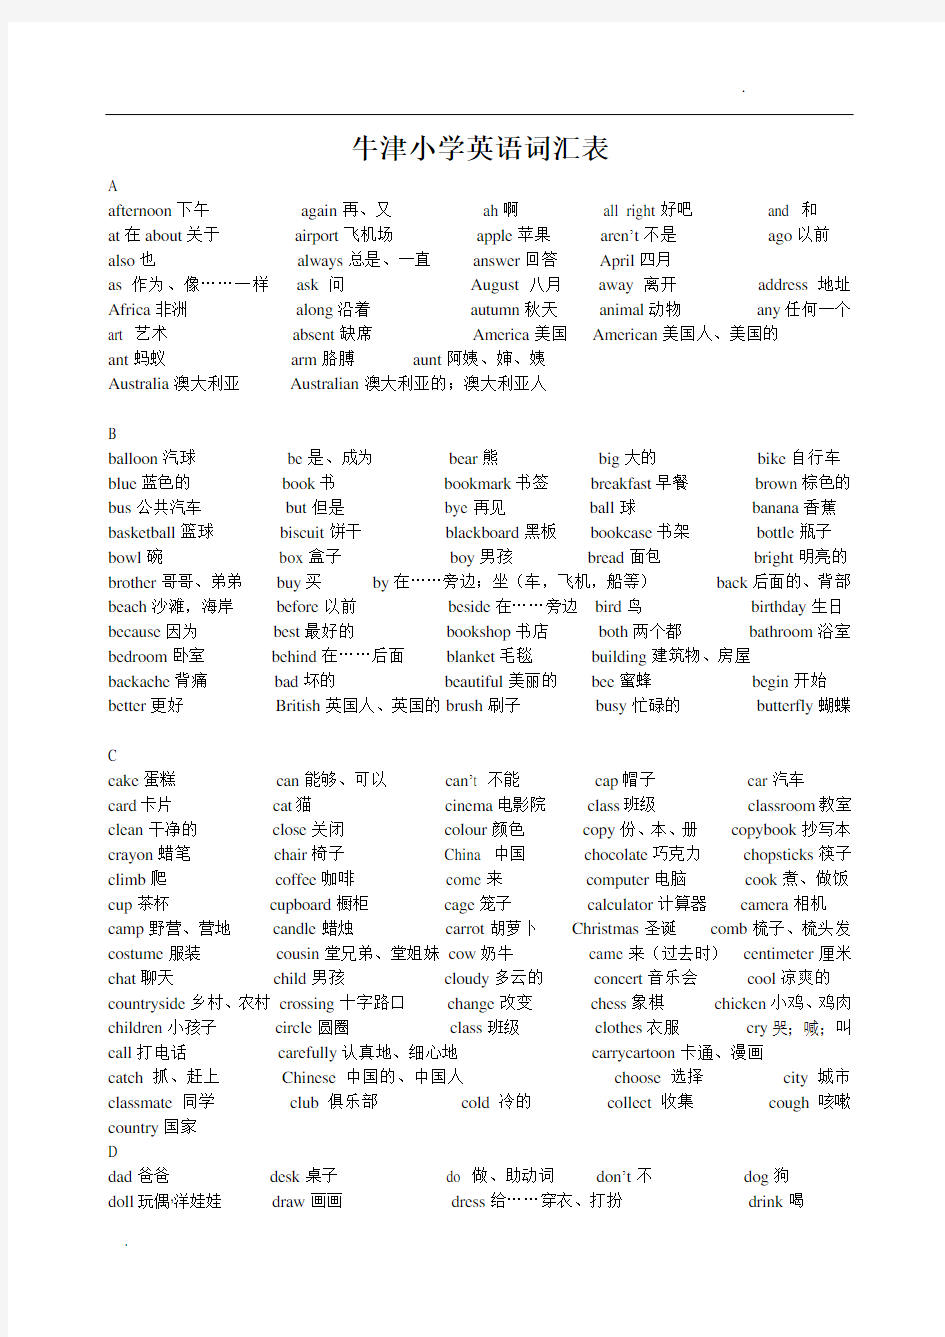 上海版牛津小学英语词汇表(全阶段)